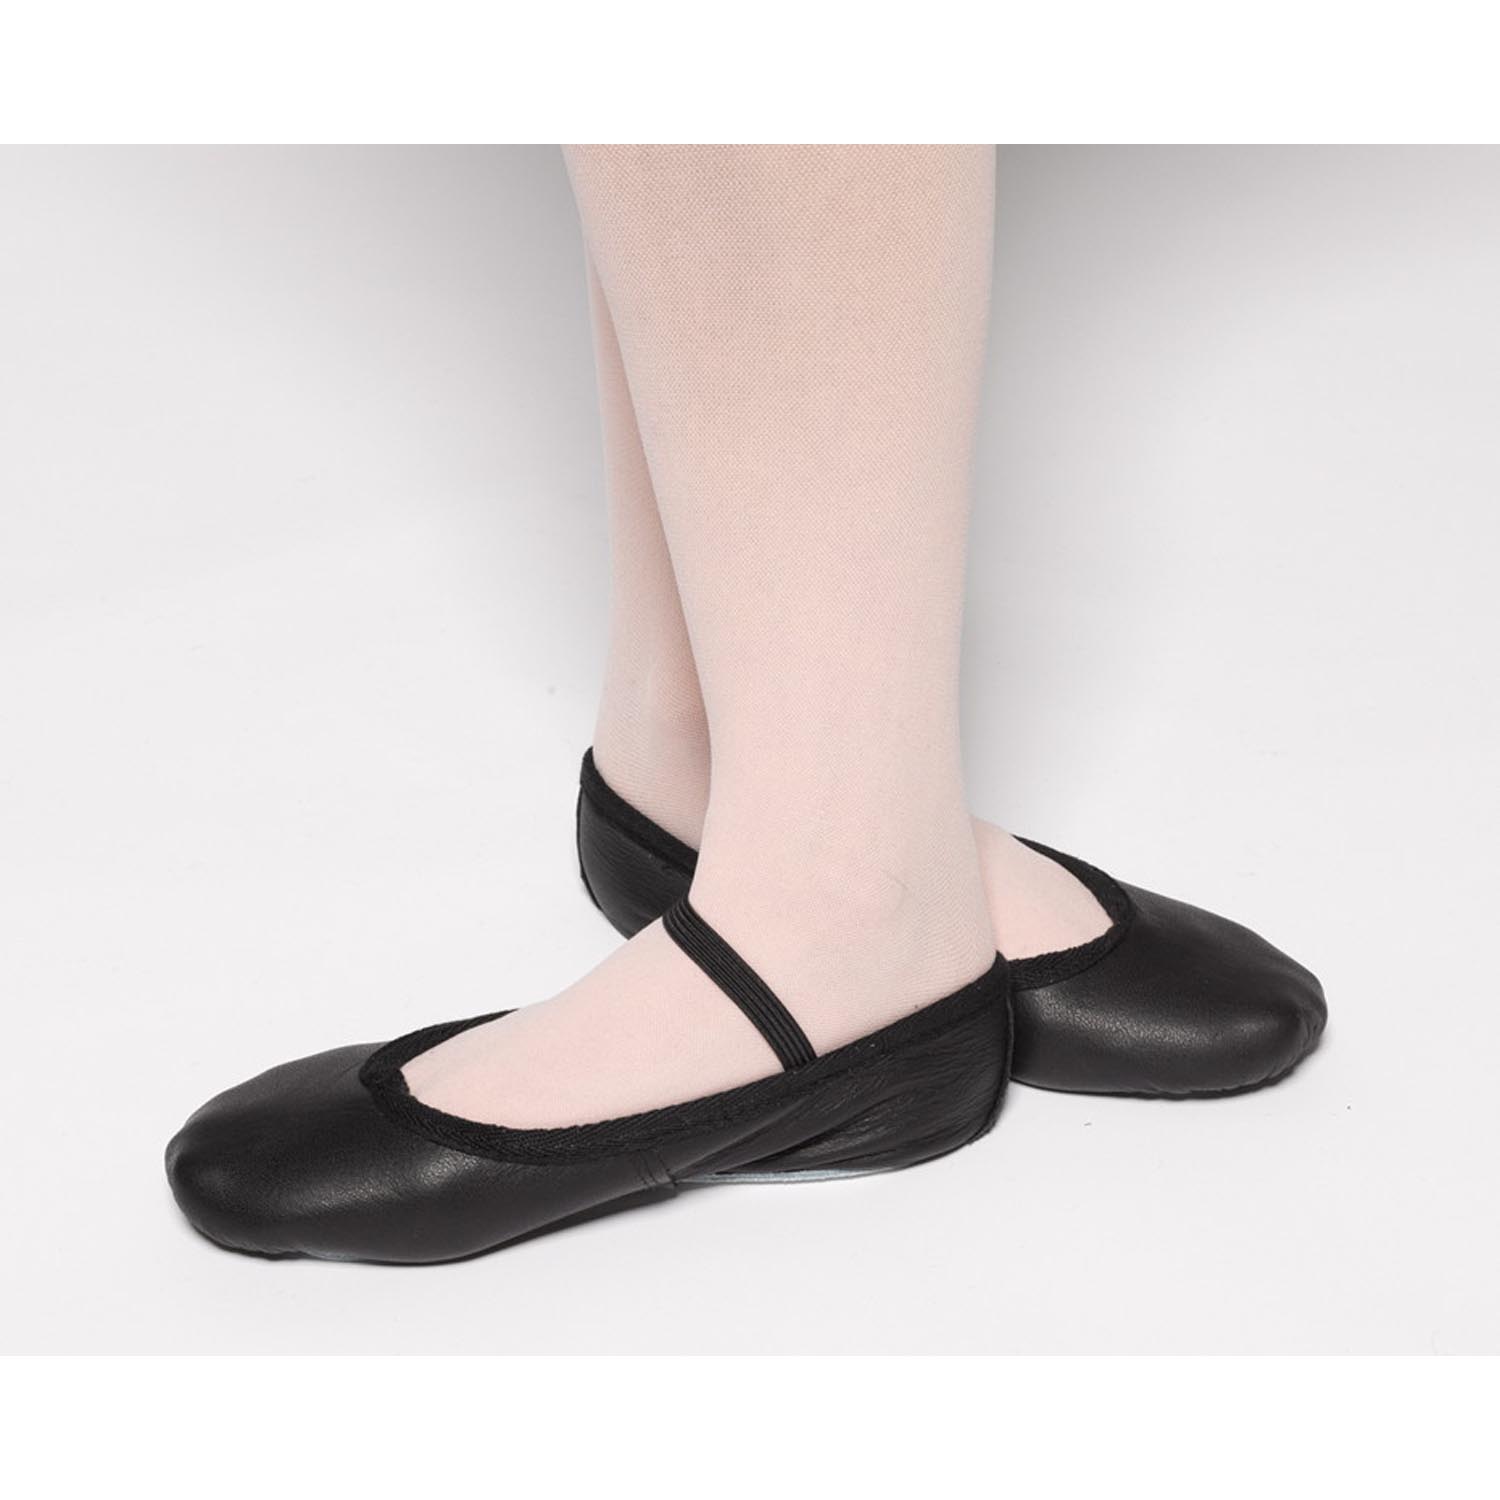 black ballet slipper shoes